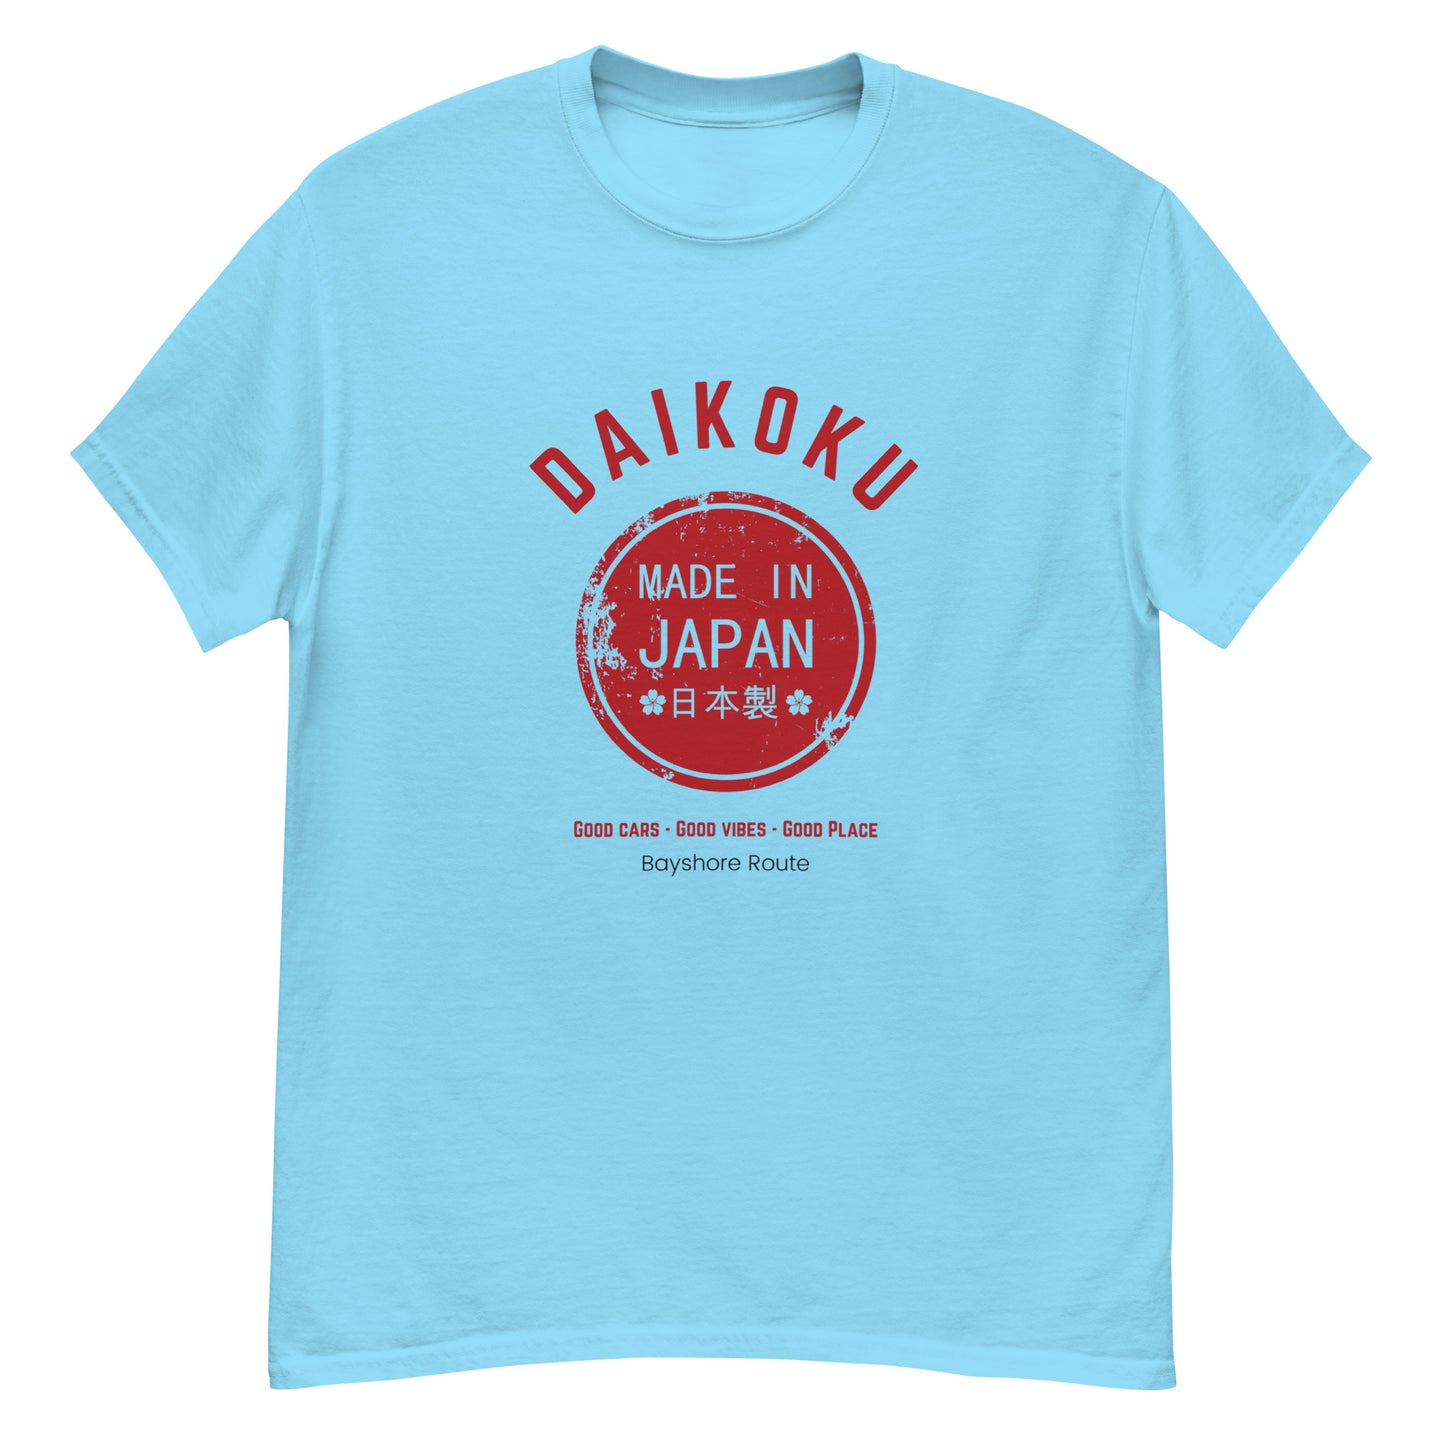 Daikoku Men's classic tee